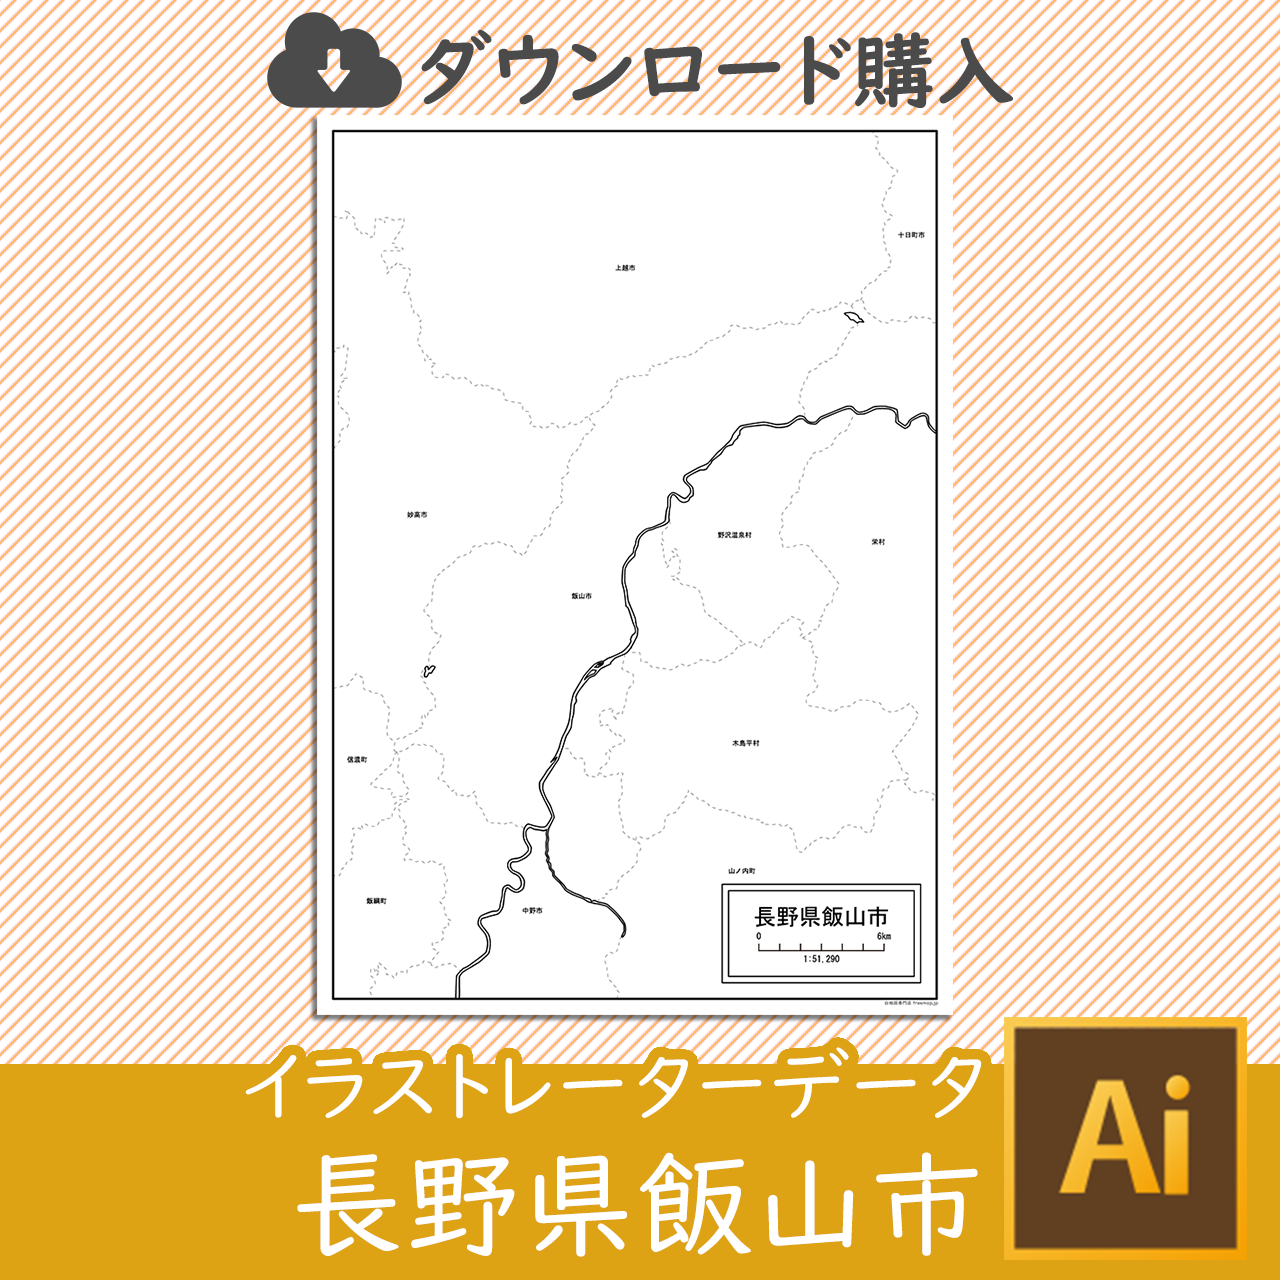 飯山市のaiデータのサムネイル画像